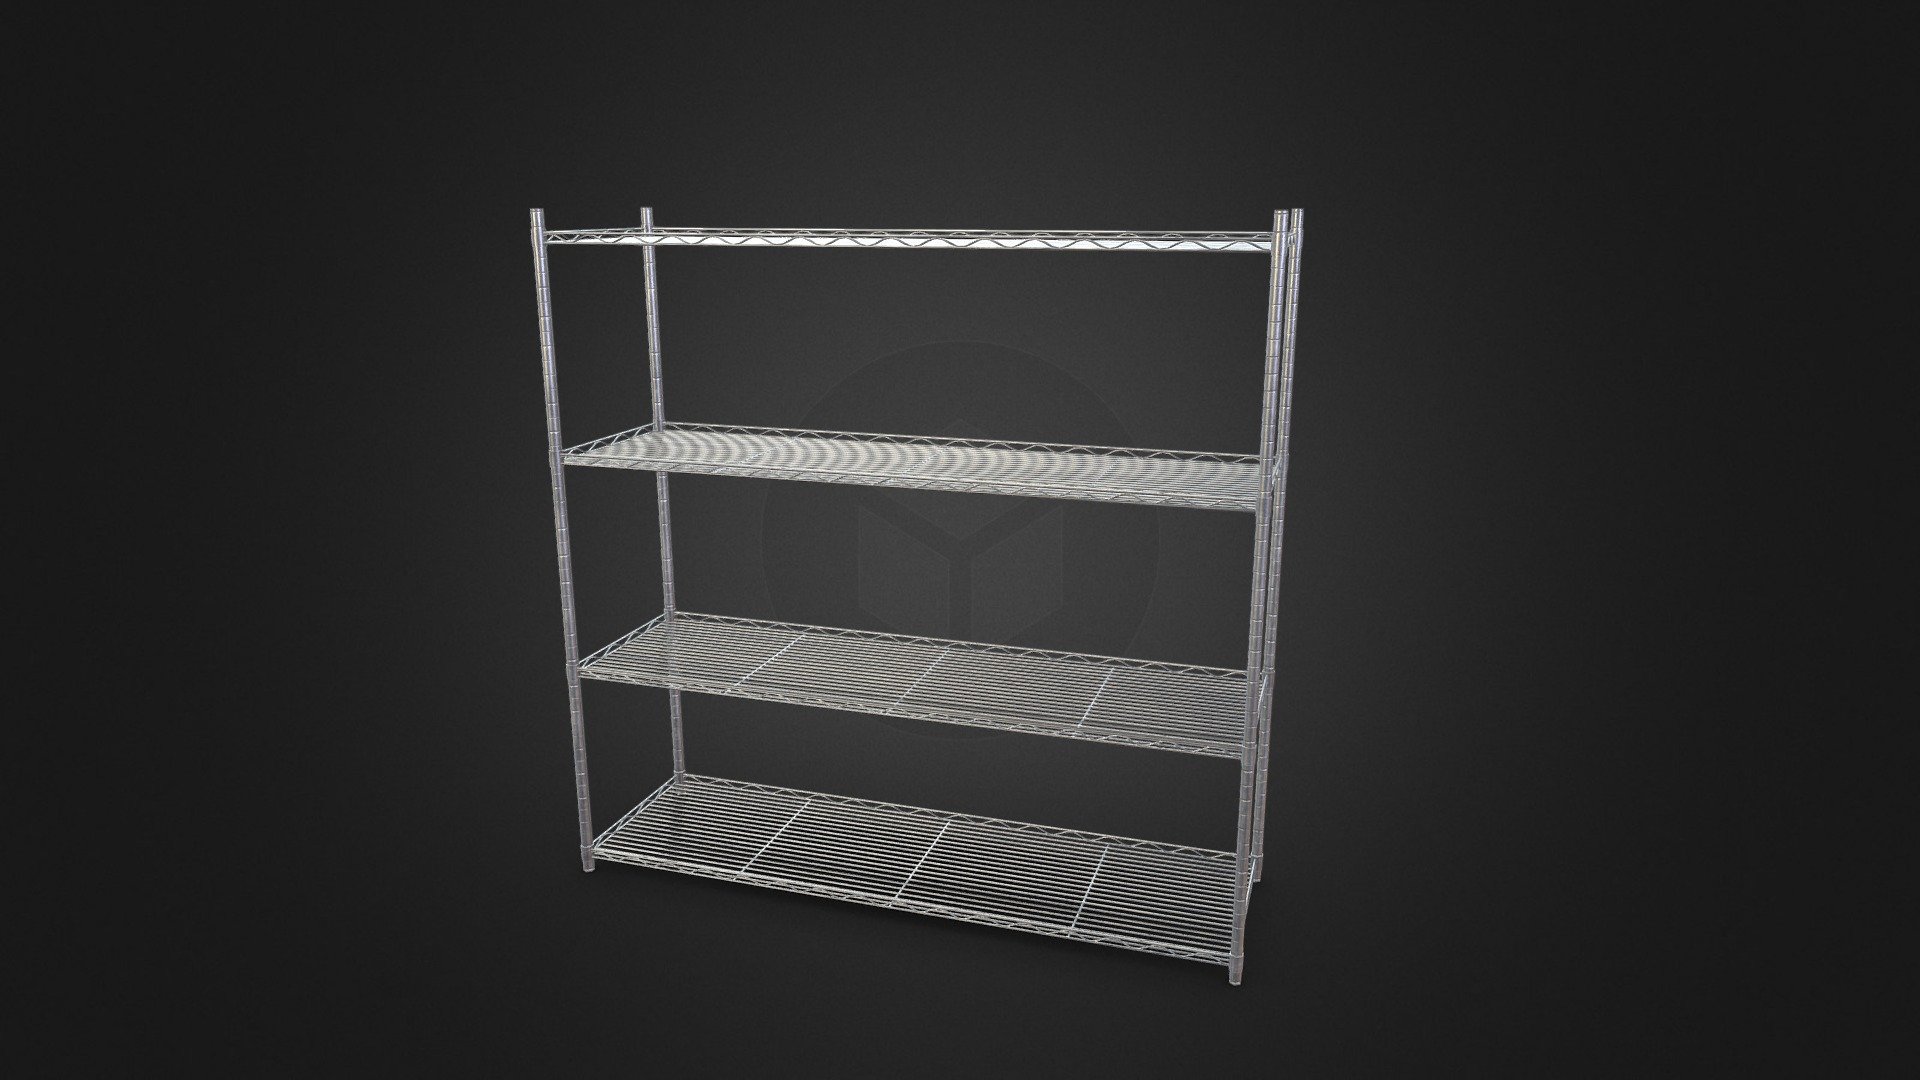 Game ready - Wire Shelf - Buy Royalty Free 3D model by Aaron Winnenberg (@winnenbergaaron) 3d model